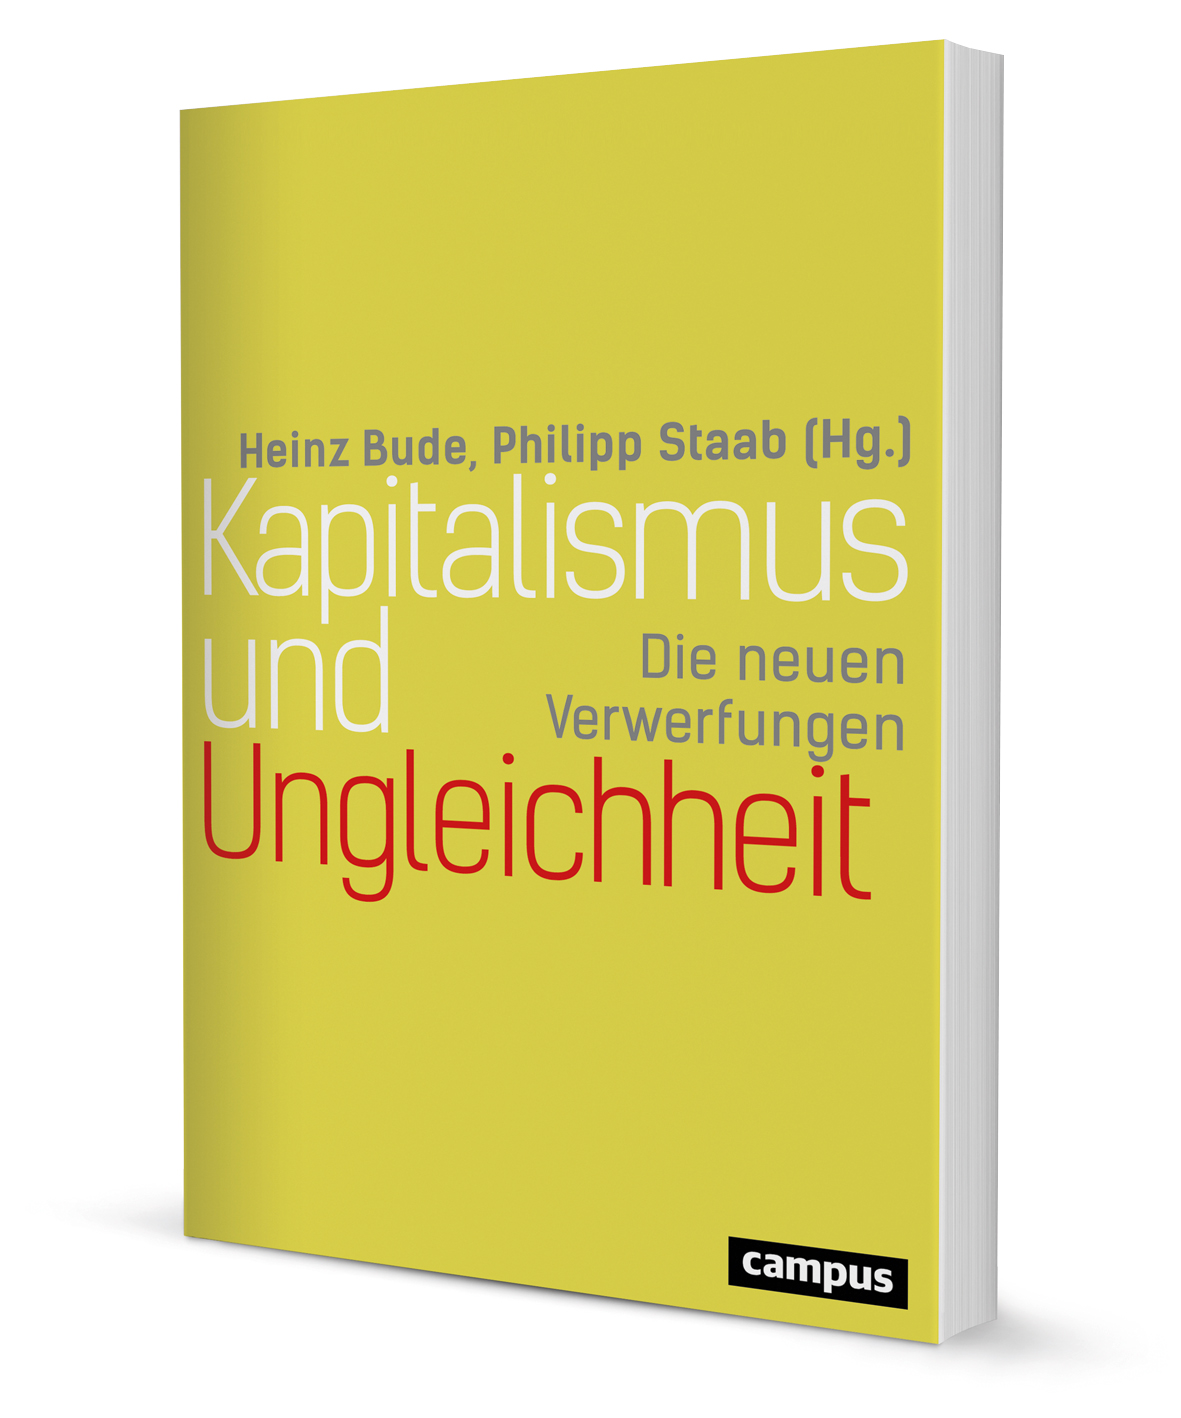 Kapitalismus Und Ungleichheit Ein Buch Von Heinz Bude Philipp Staab Campus Verlag